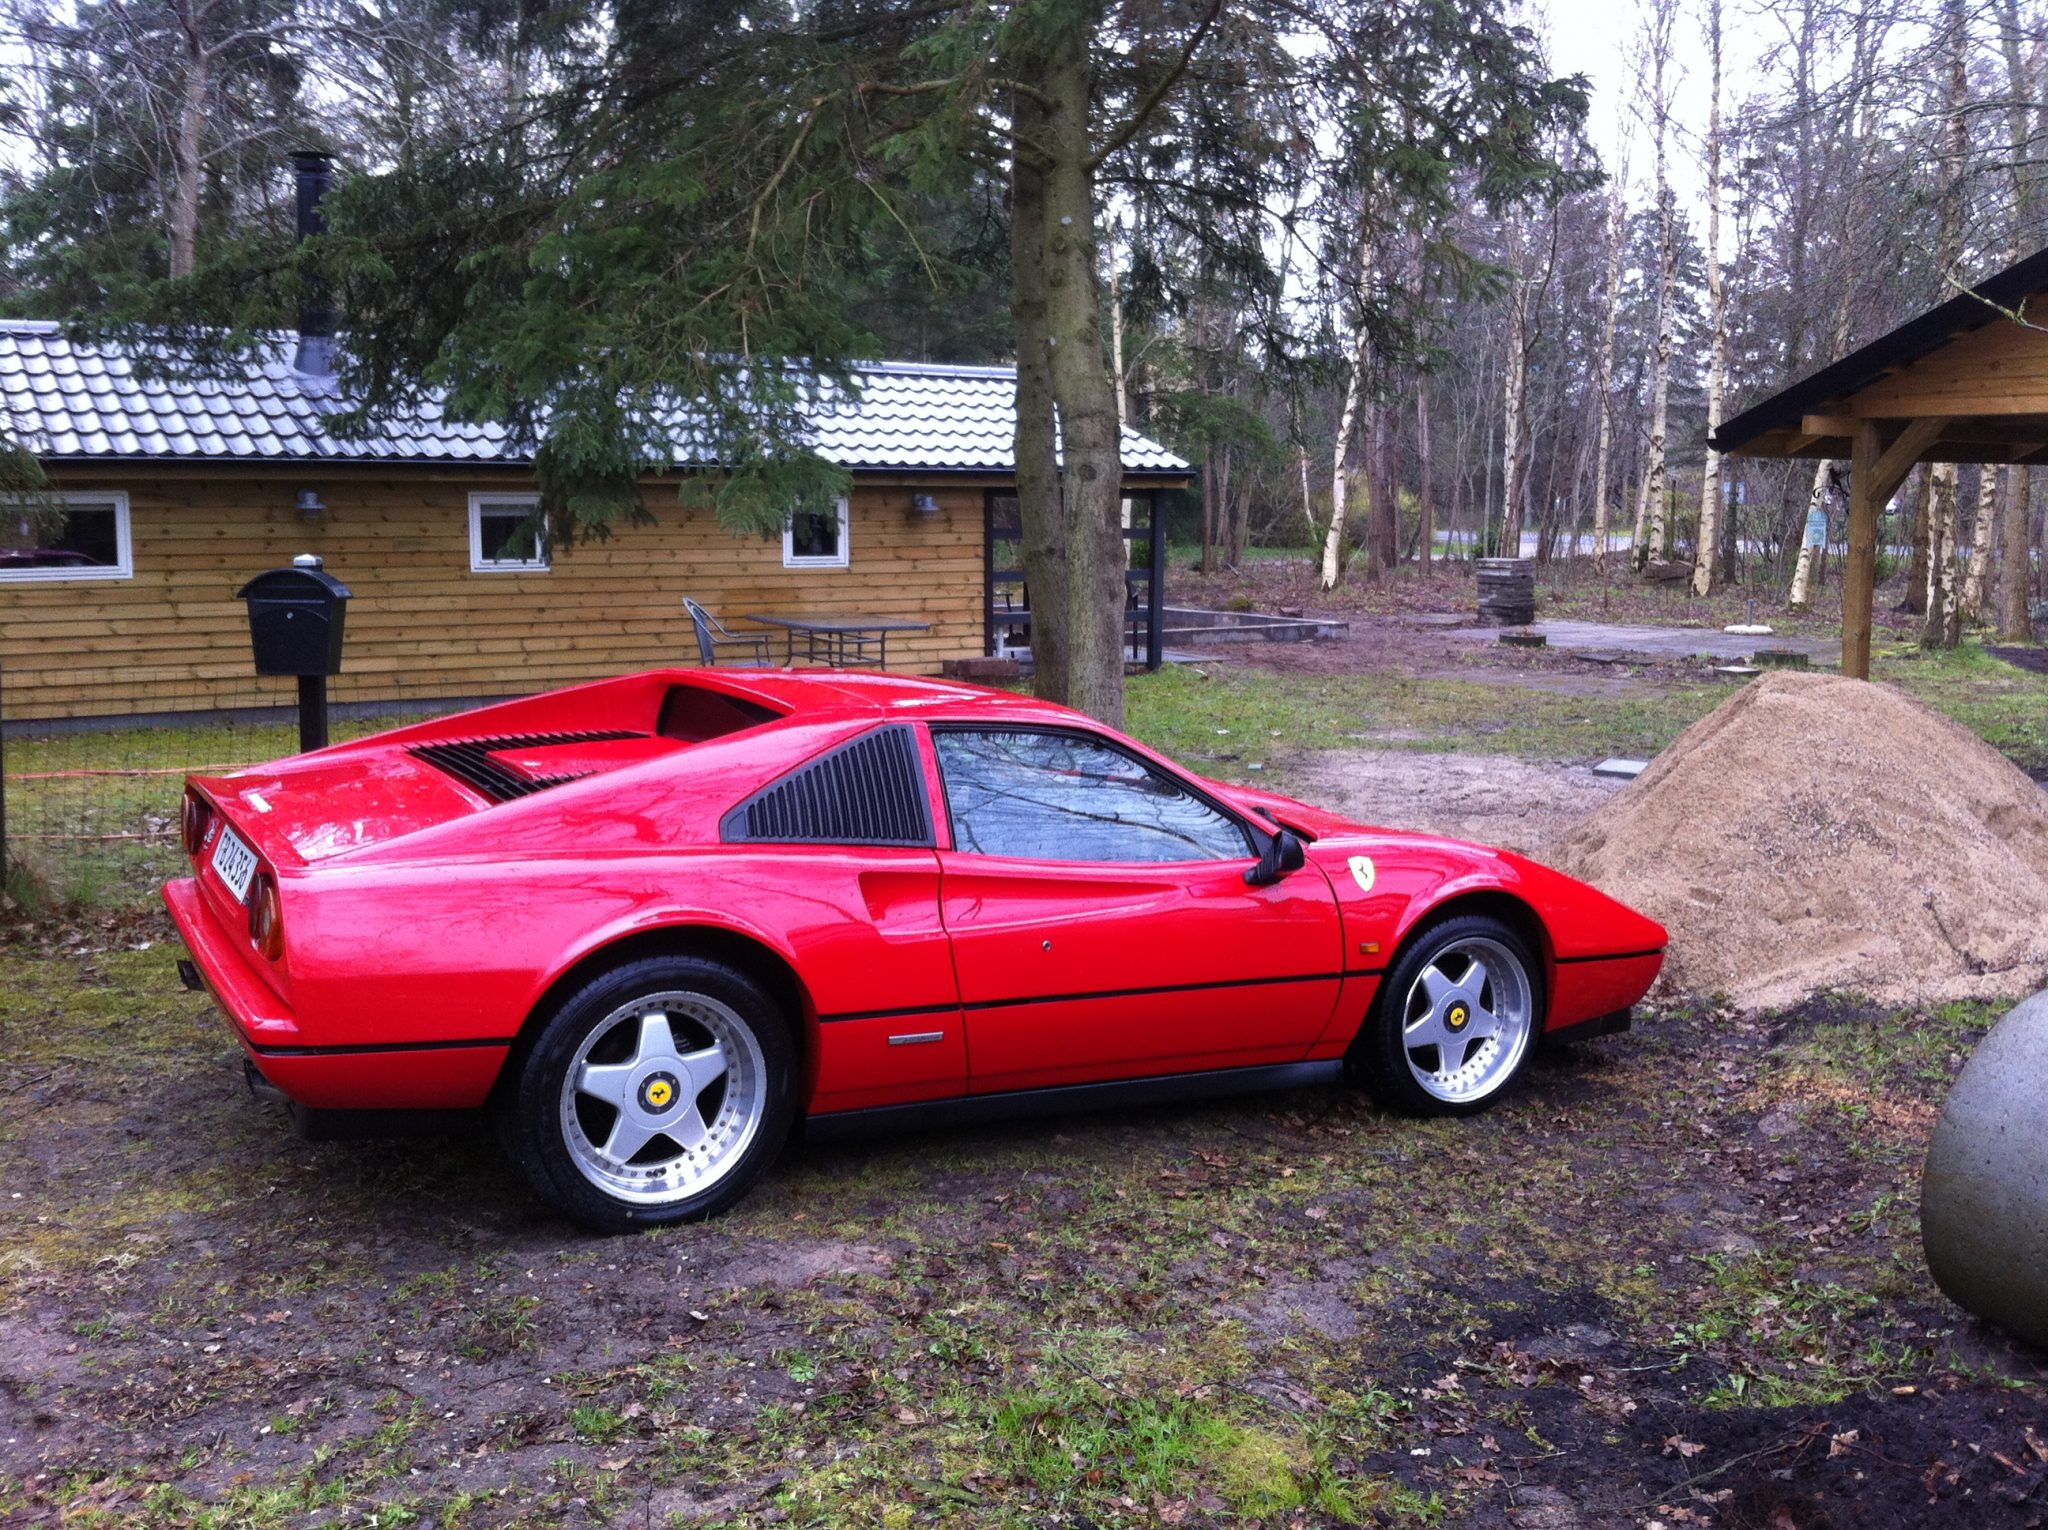 1986 Fiero Ferrari kitcar